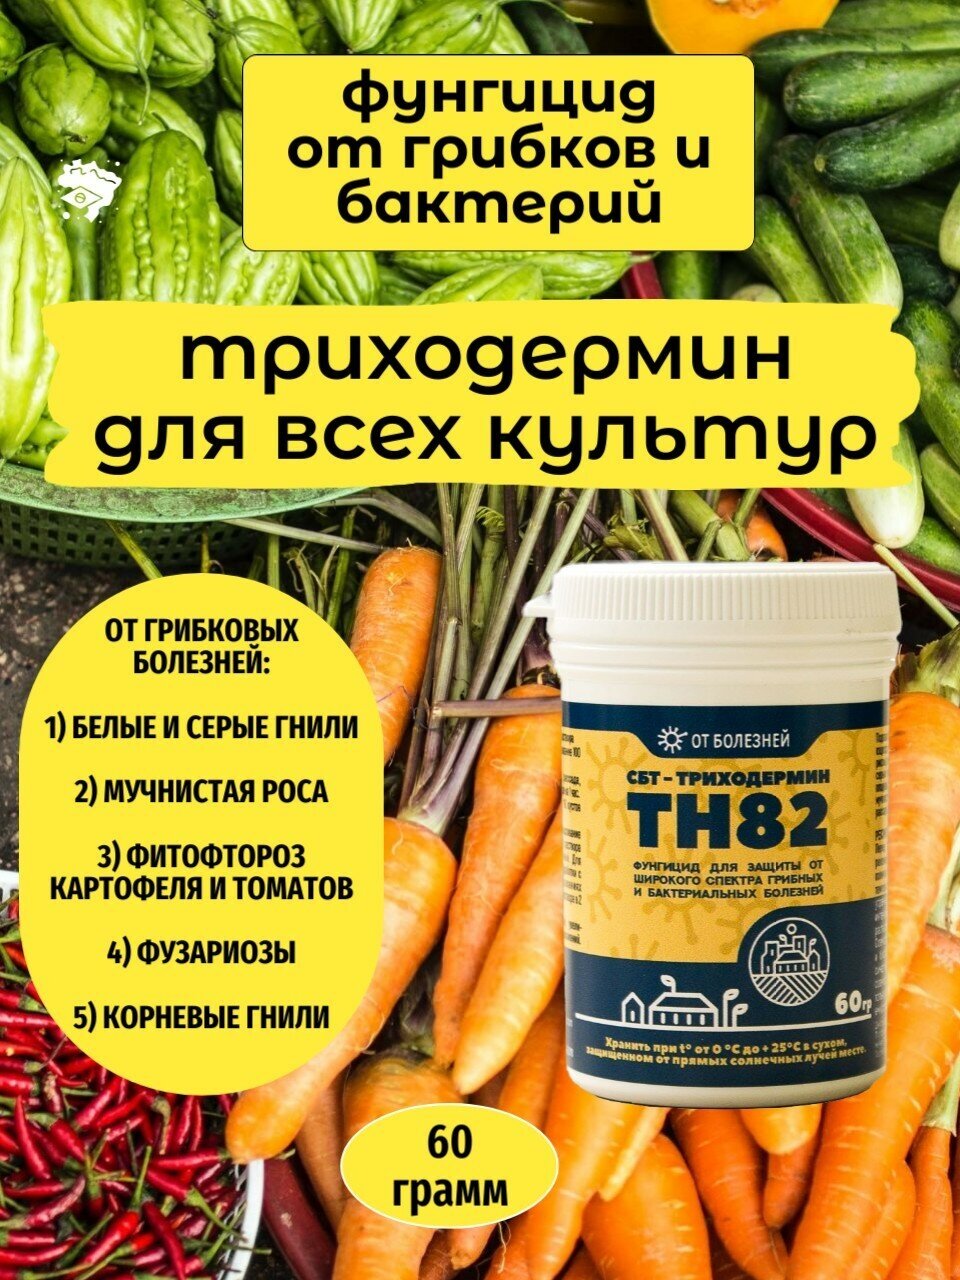 Фунгицид СБТ-Триходермин ТН82 (60гр). Биопрепарат от болезней растений